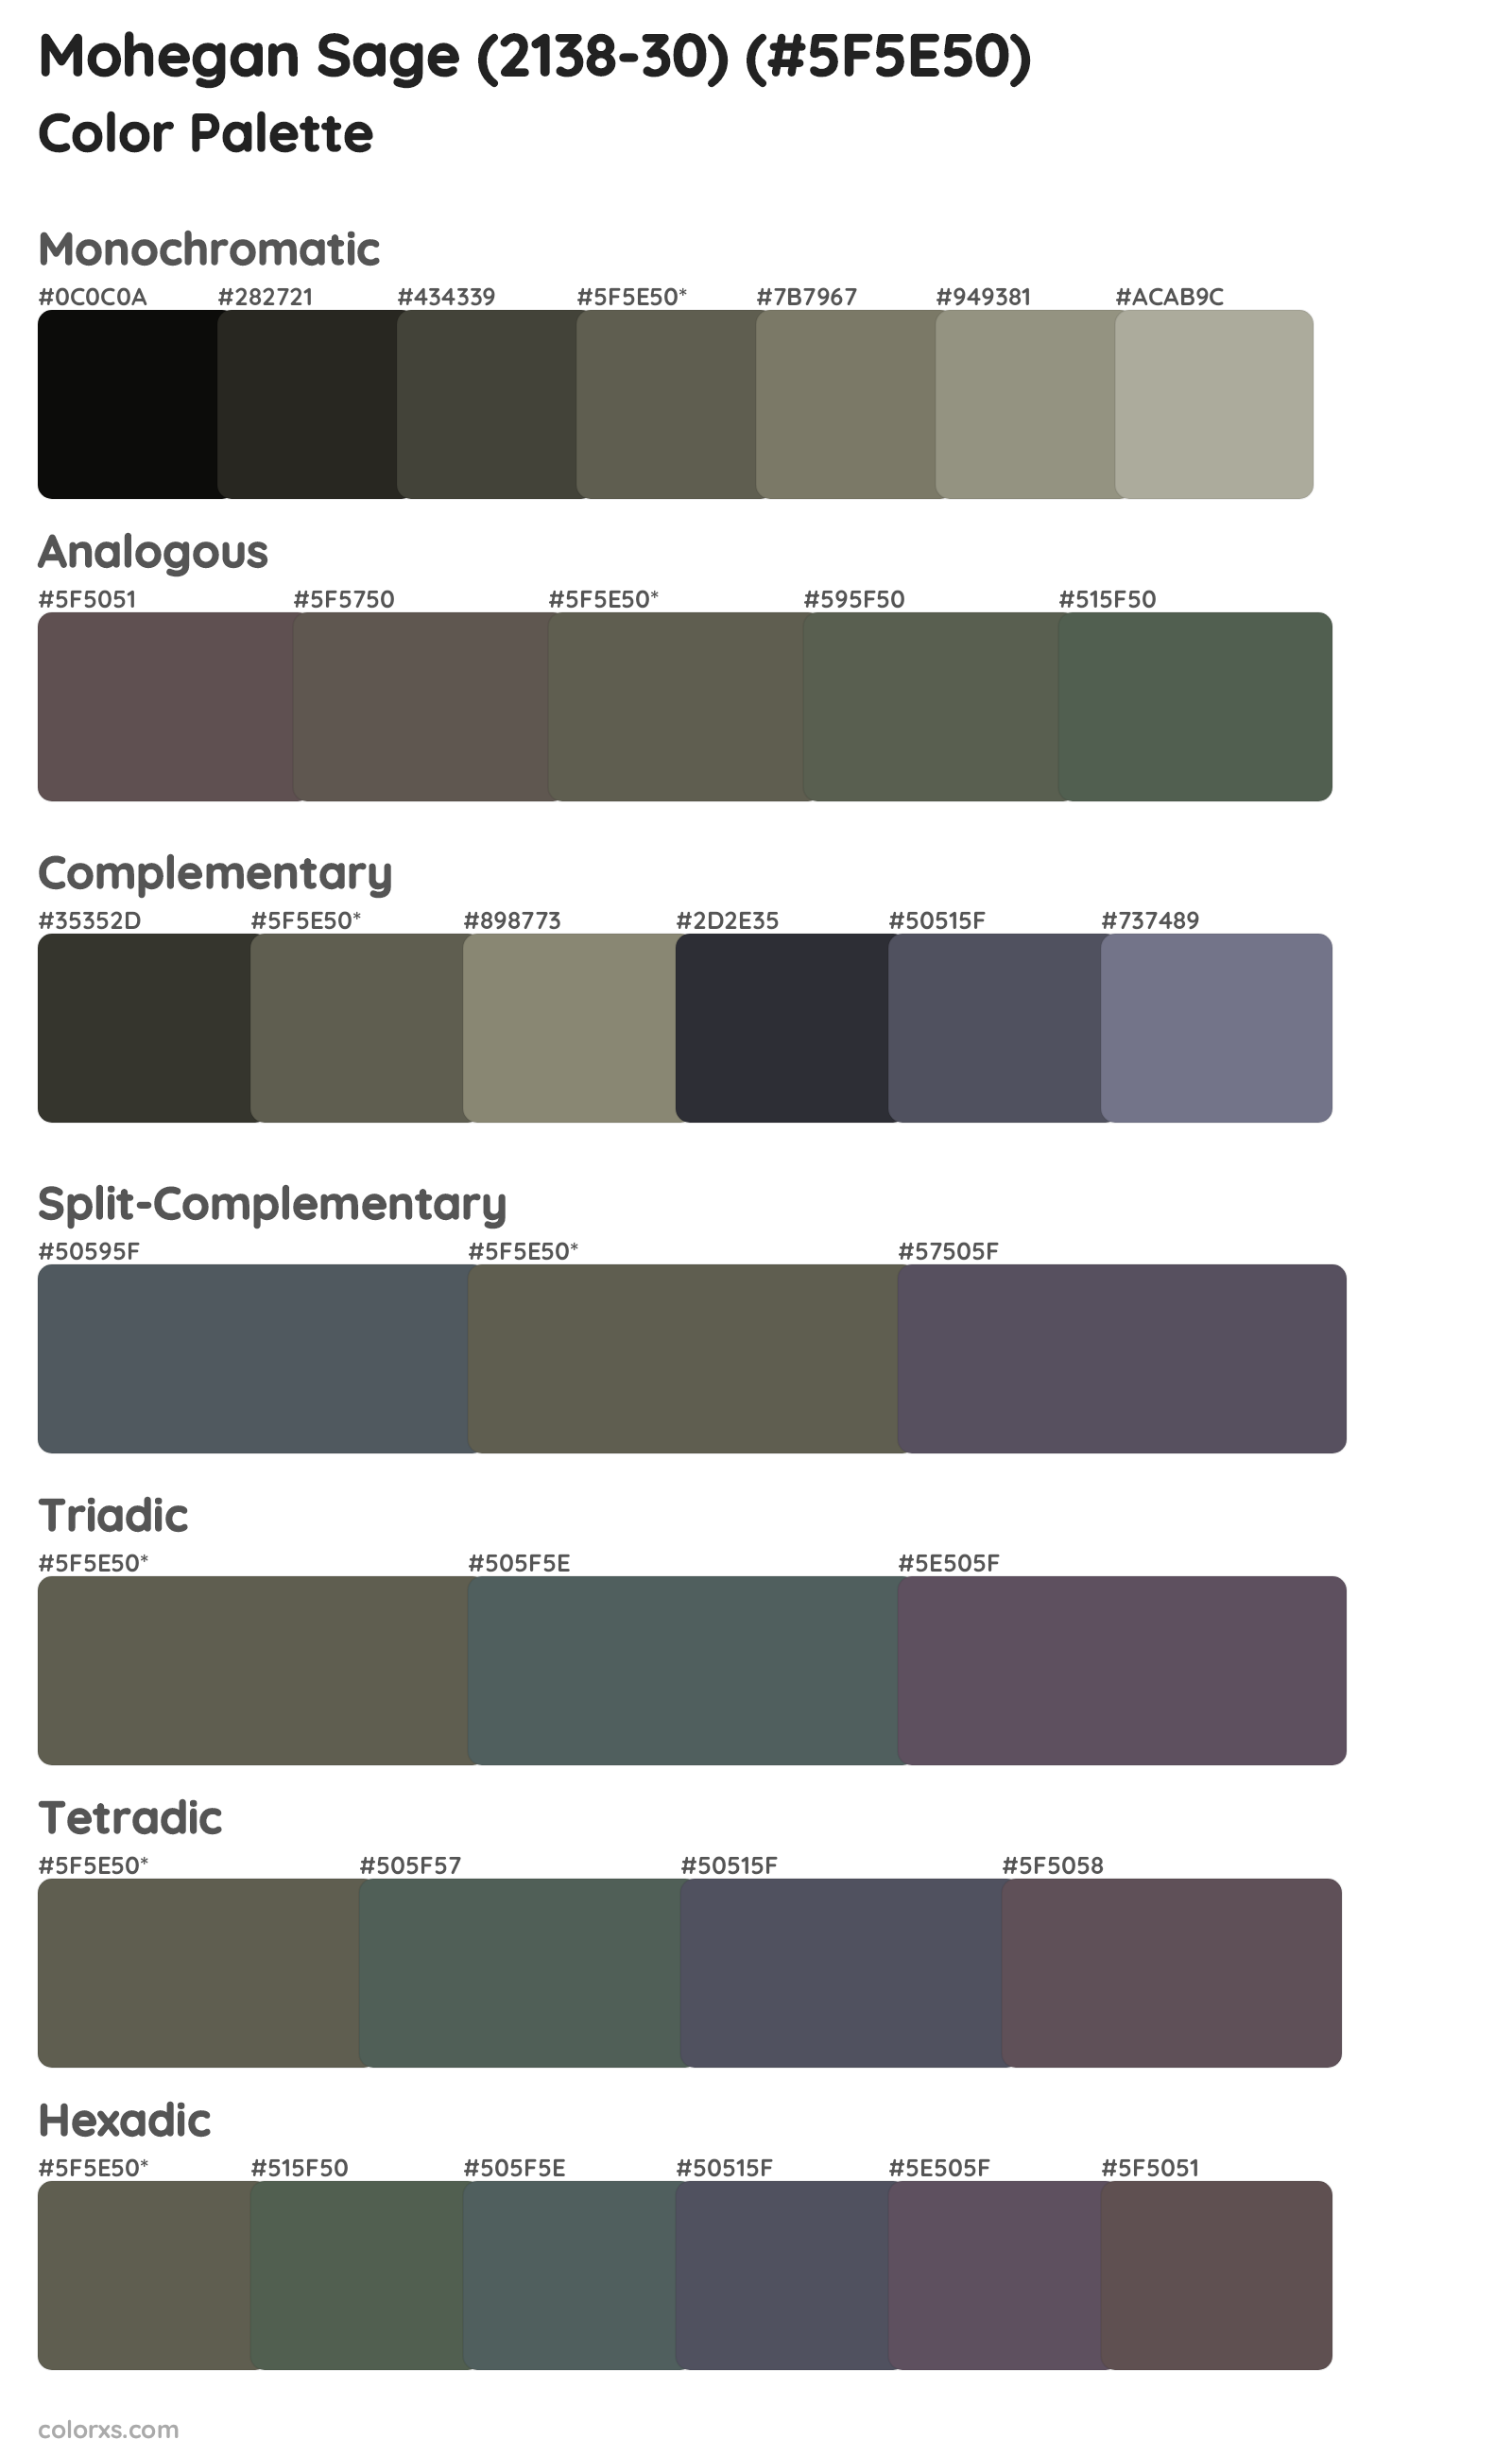 Mohegan Sage (2138-30) Color Scheme Palettes